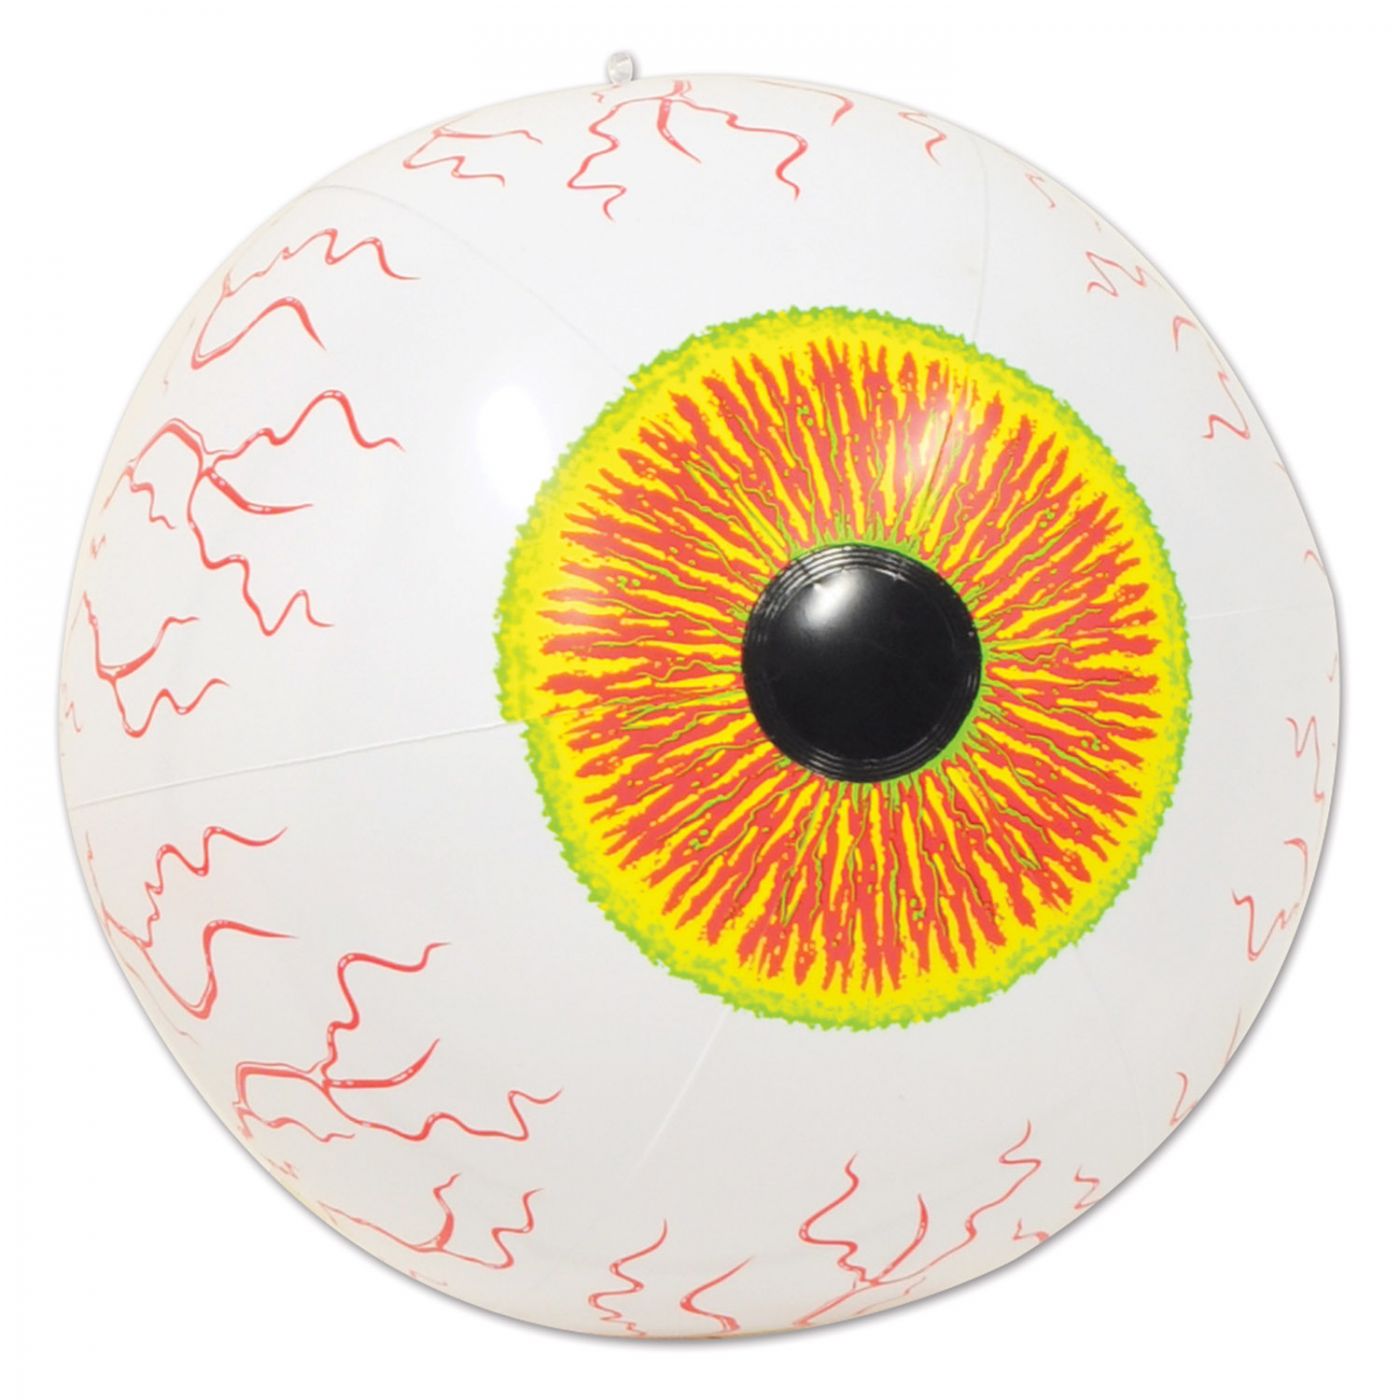 Inflatable Eyeball image